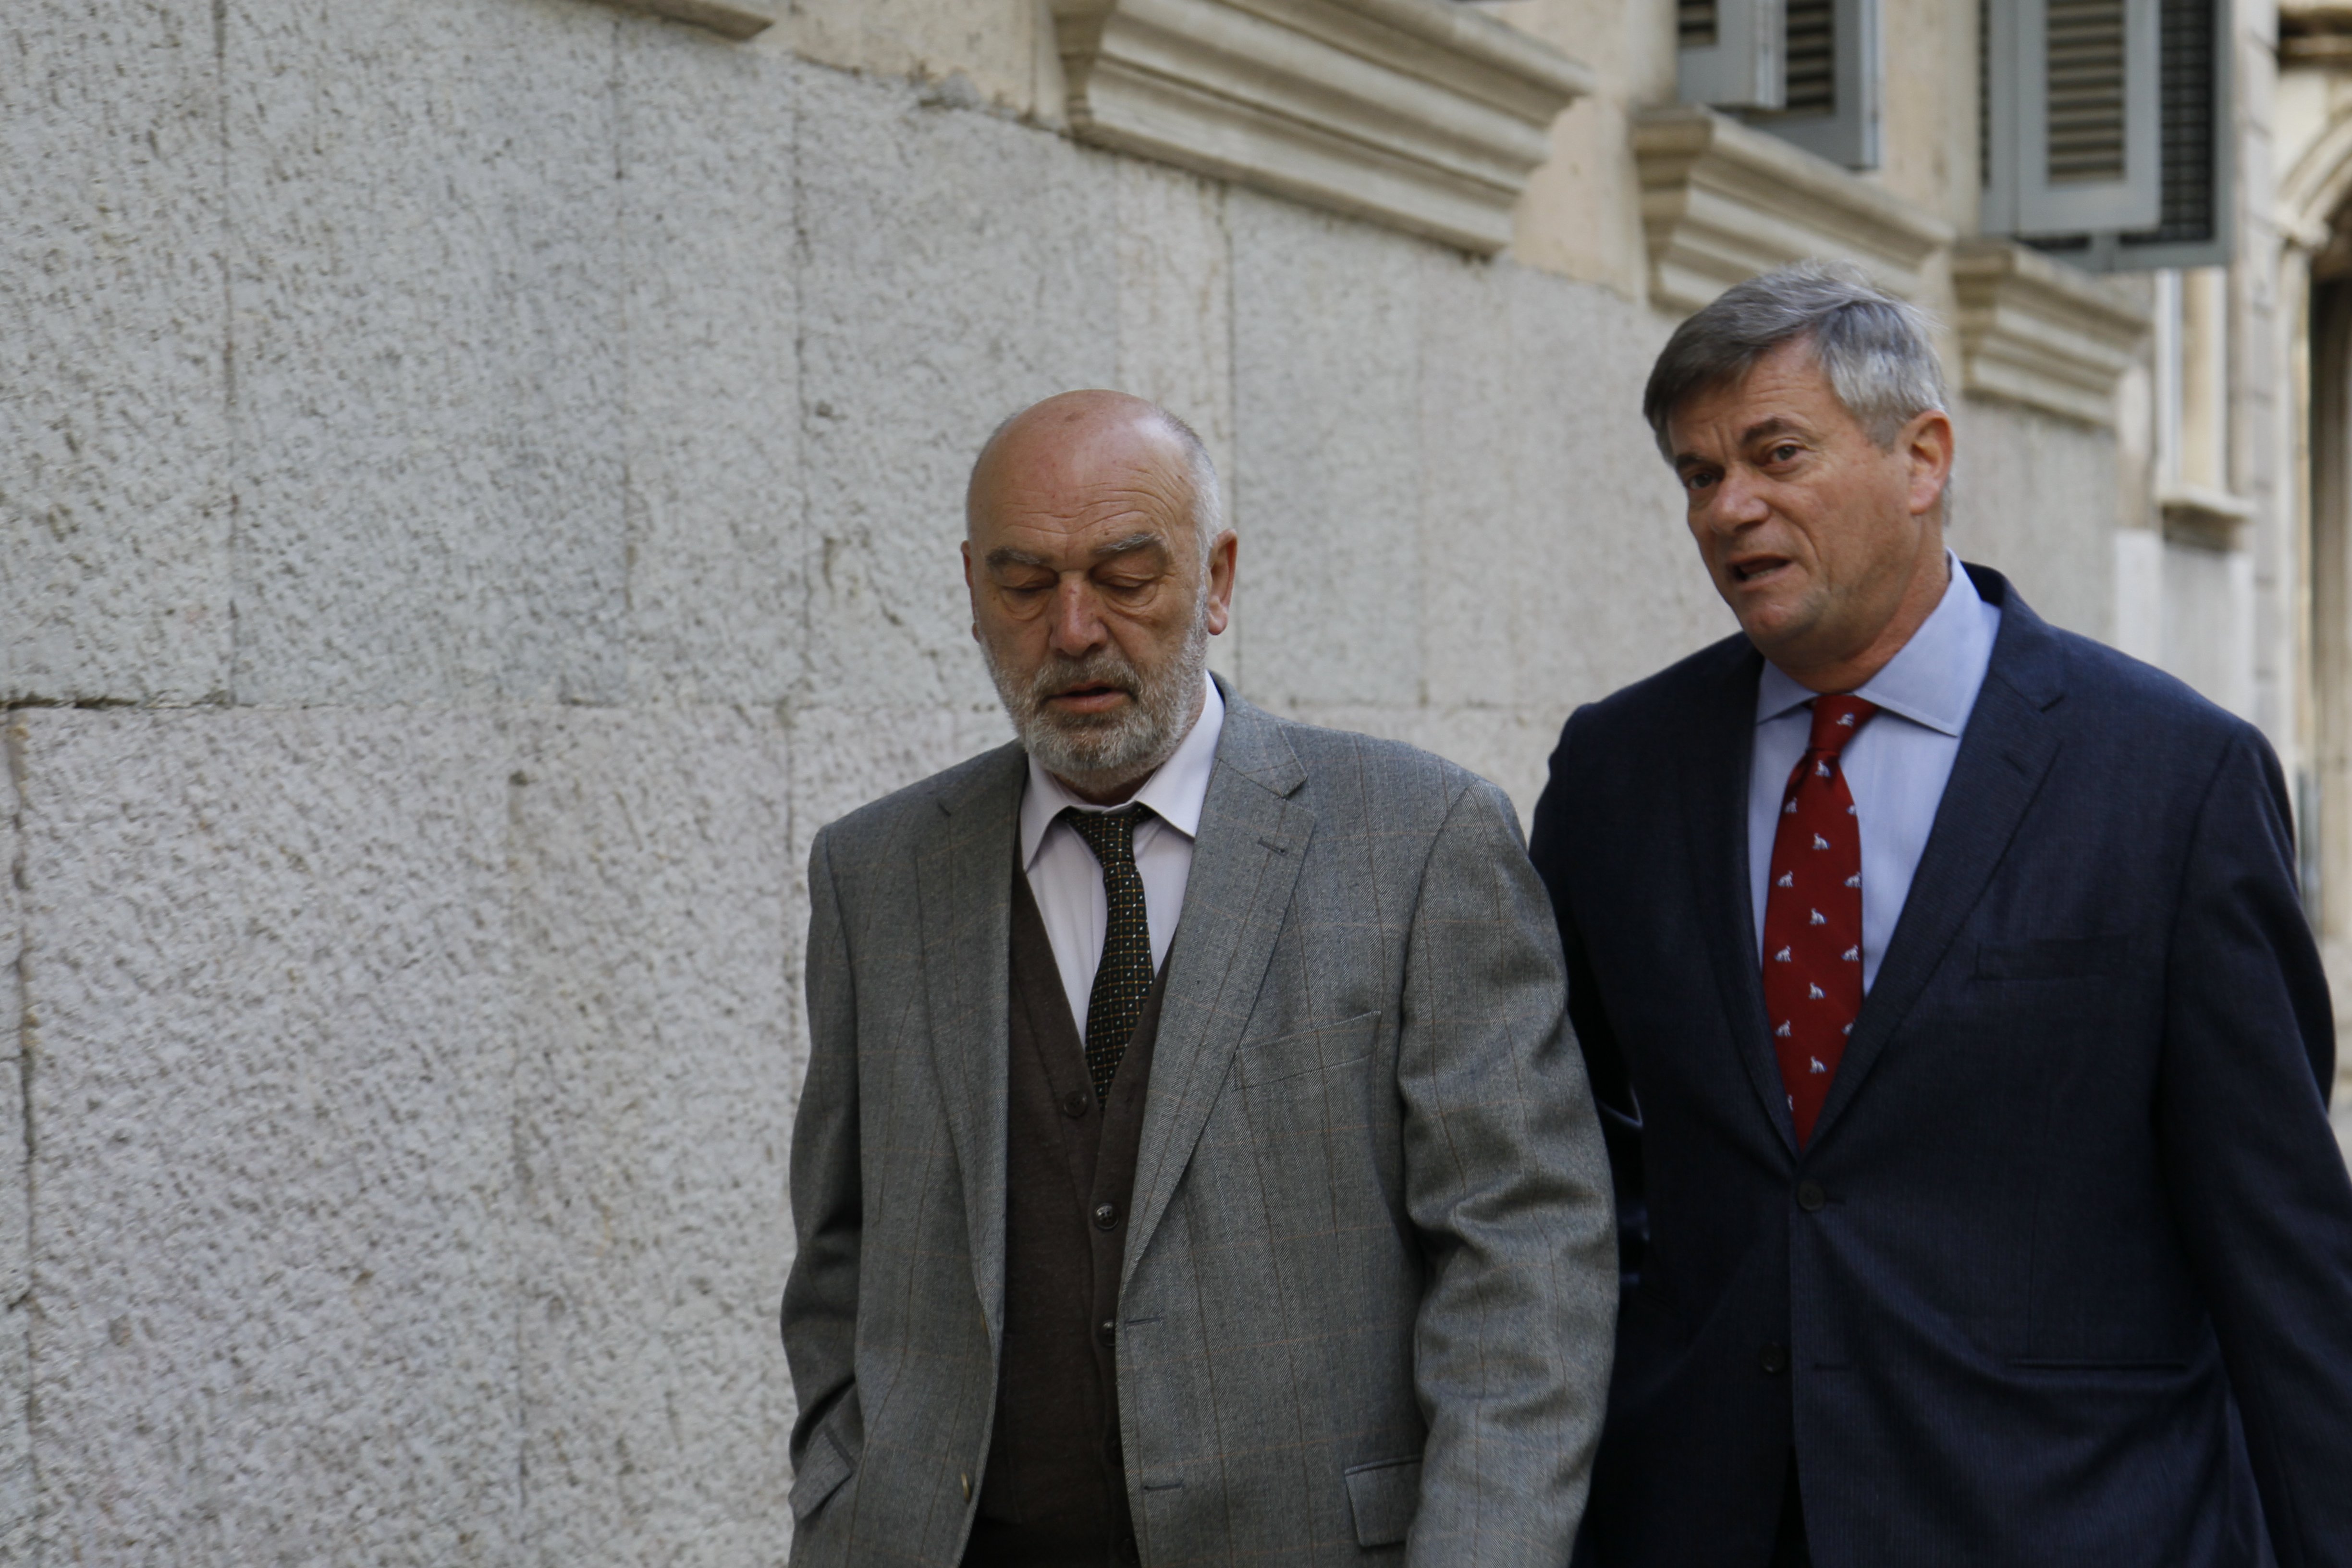 El jutge de les Balears que va controlar telèfons de periodistes s'haurà de jubilar anticipadament